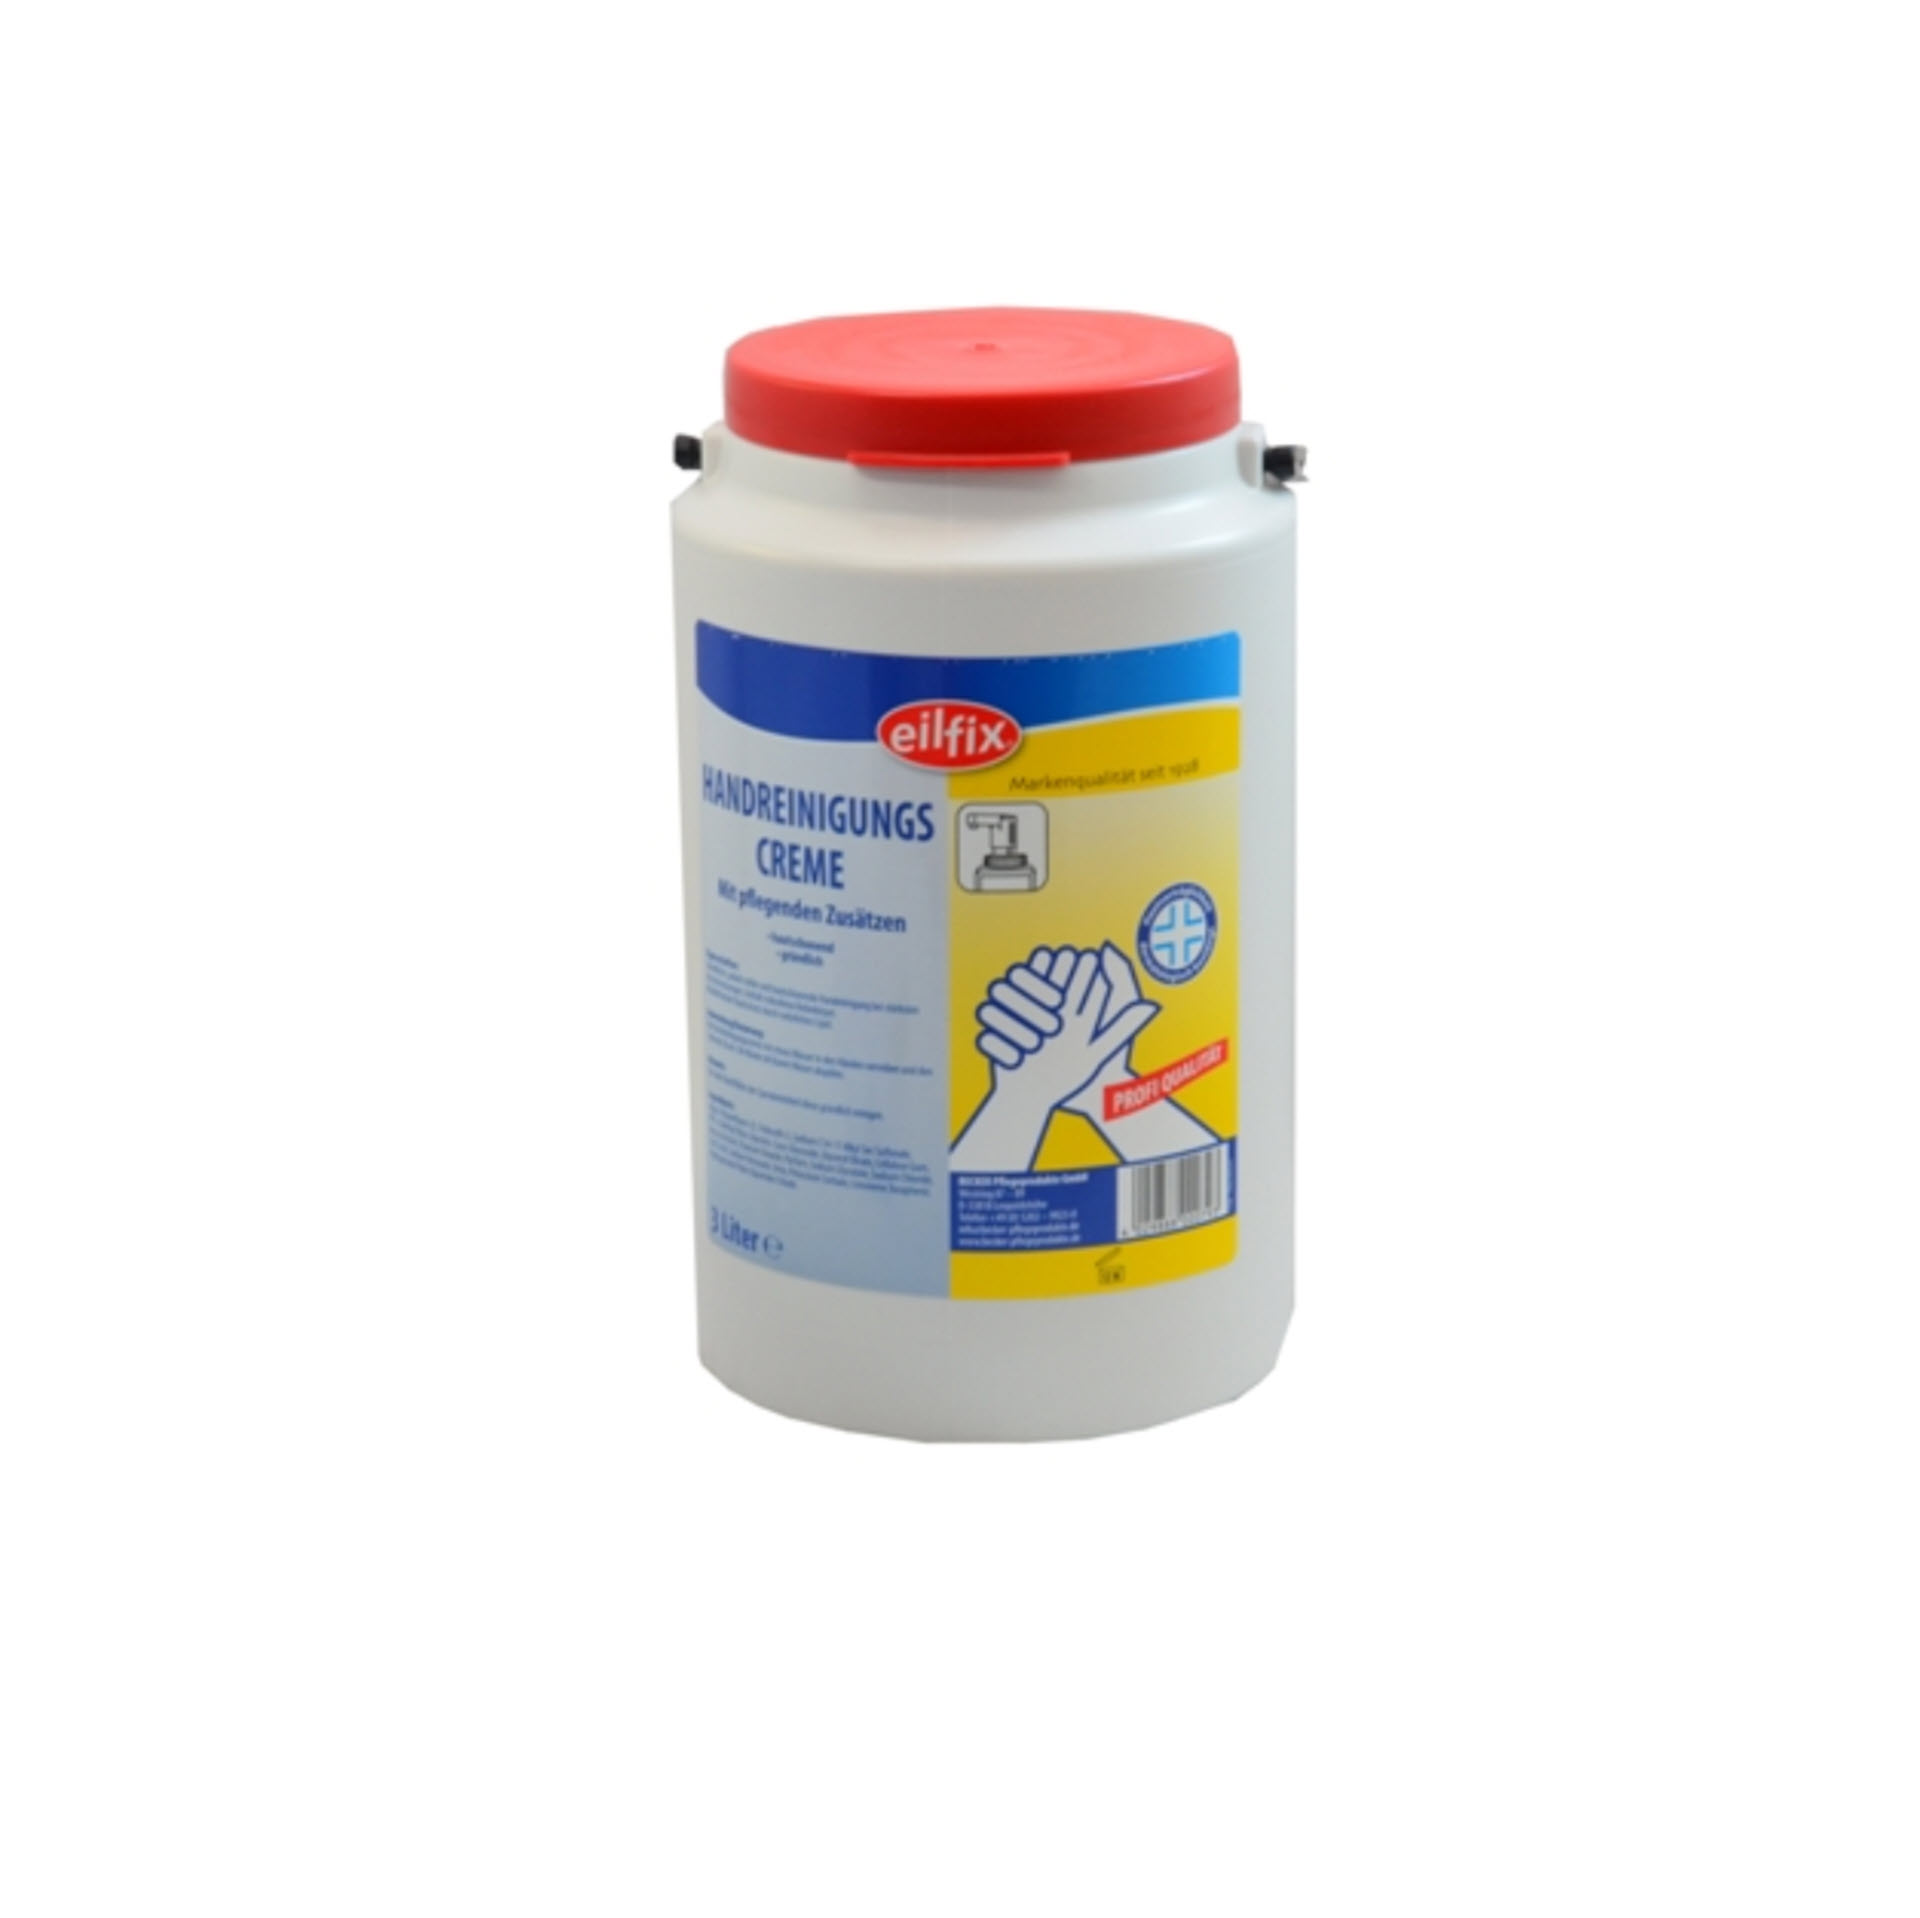 Eilfix® Handreinigungscreme 3 Liter Kanne